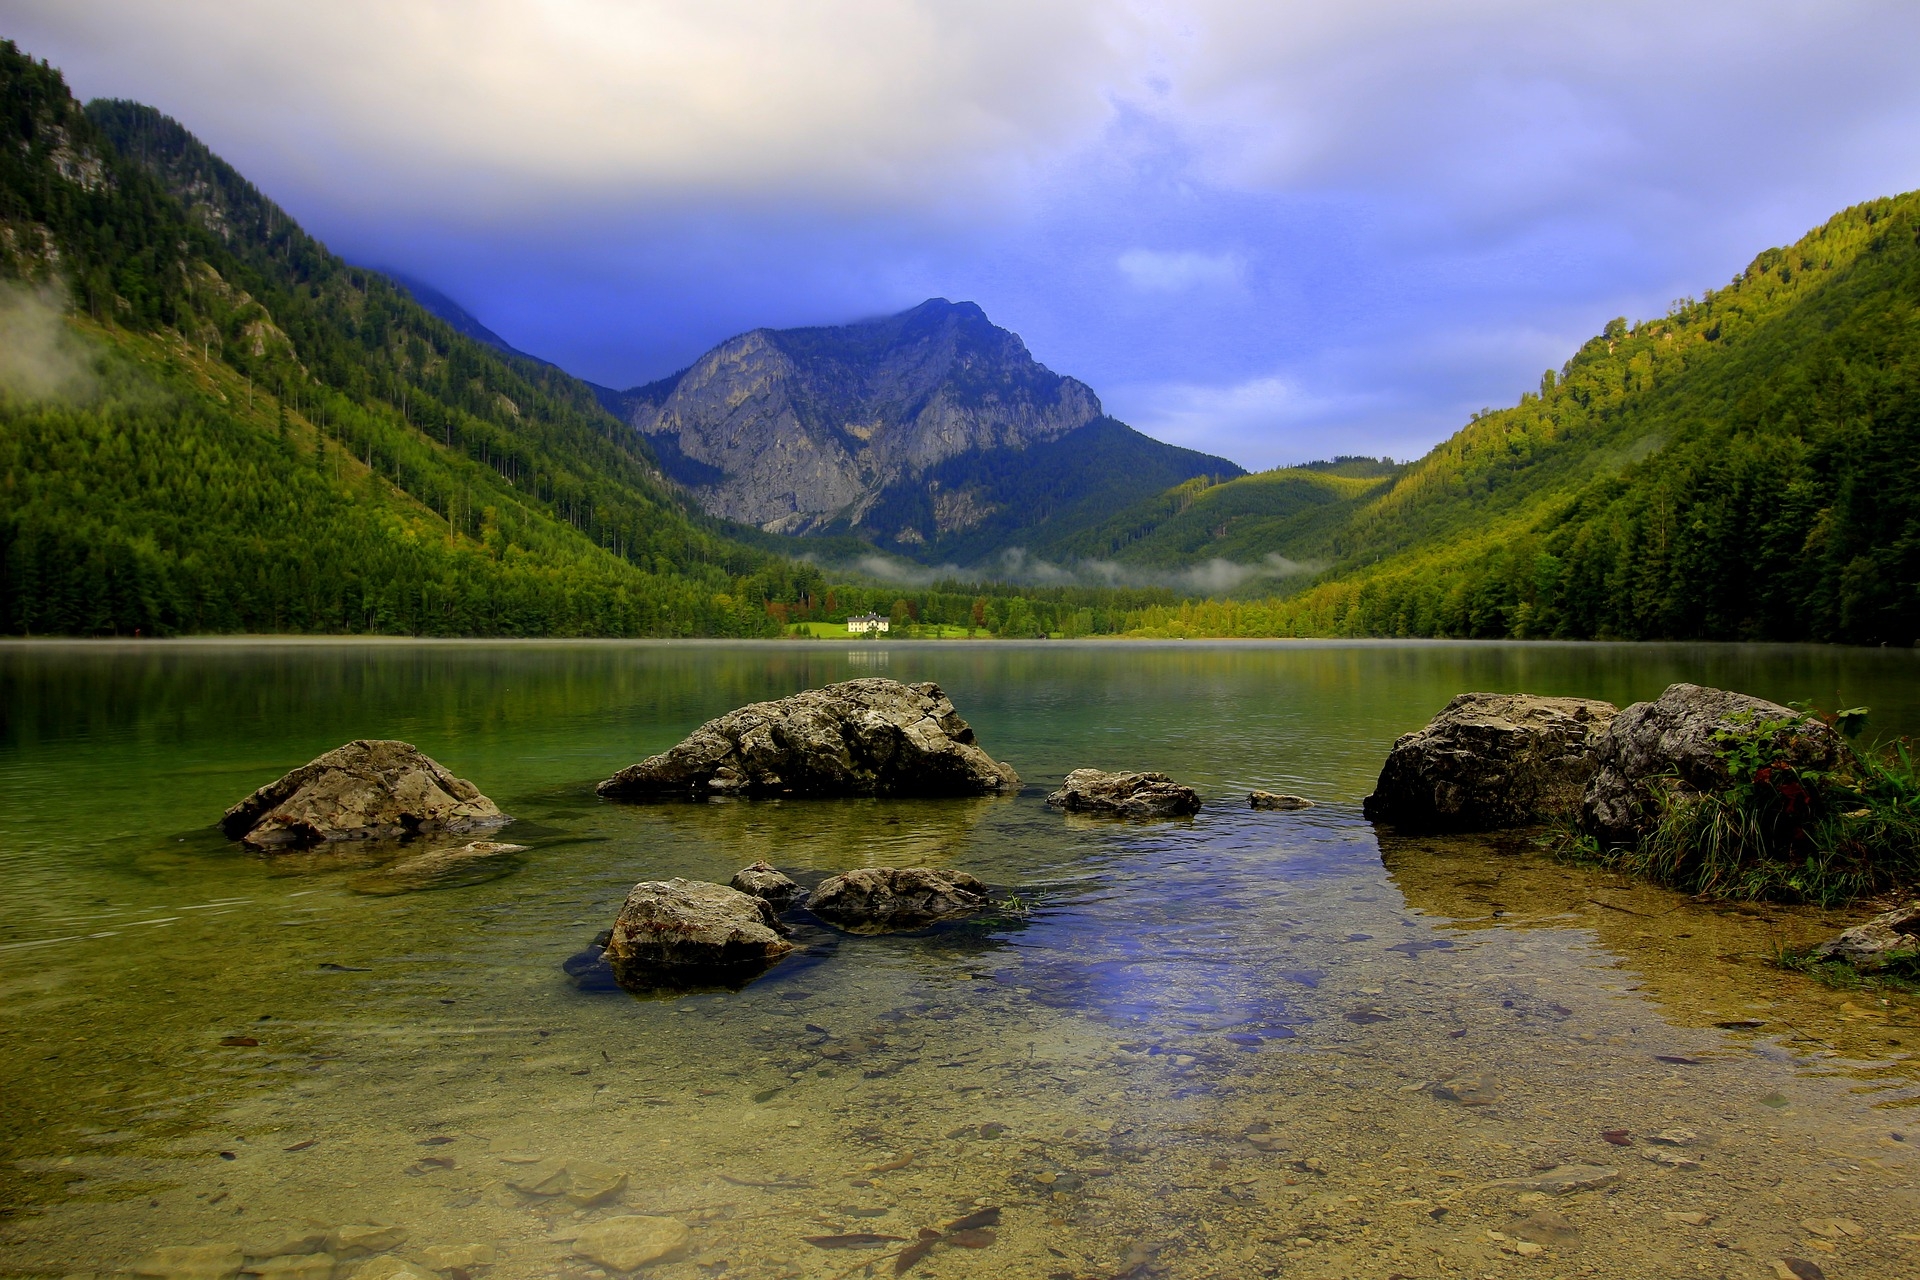 https://pixabay.com/en/mountains-water-lake-2721122/